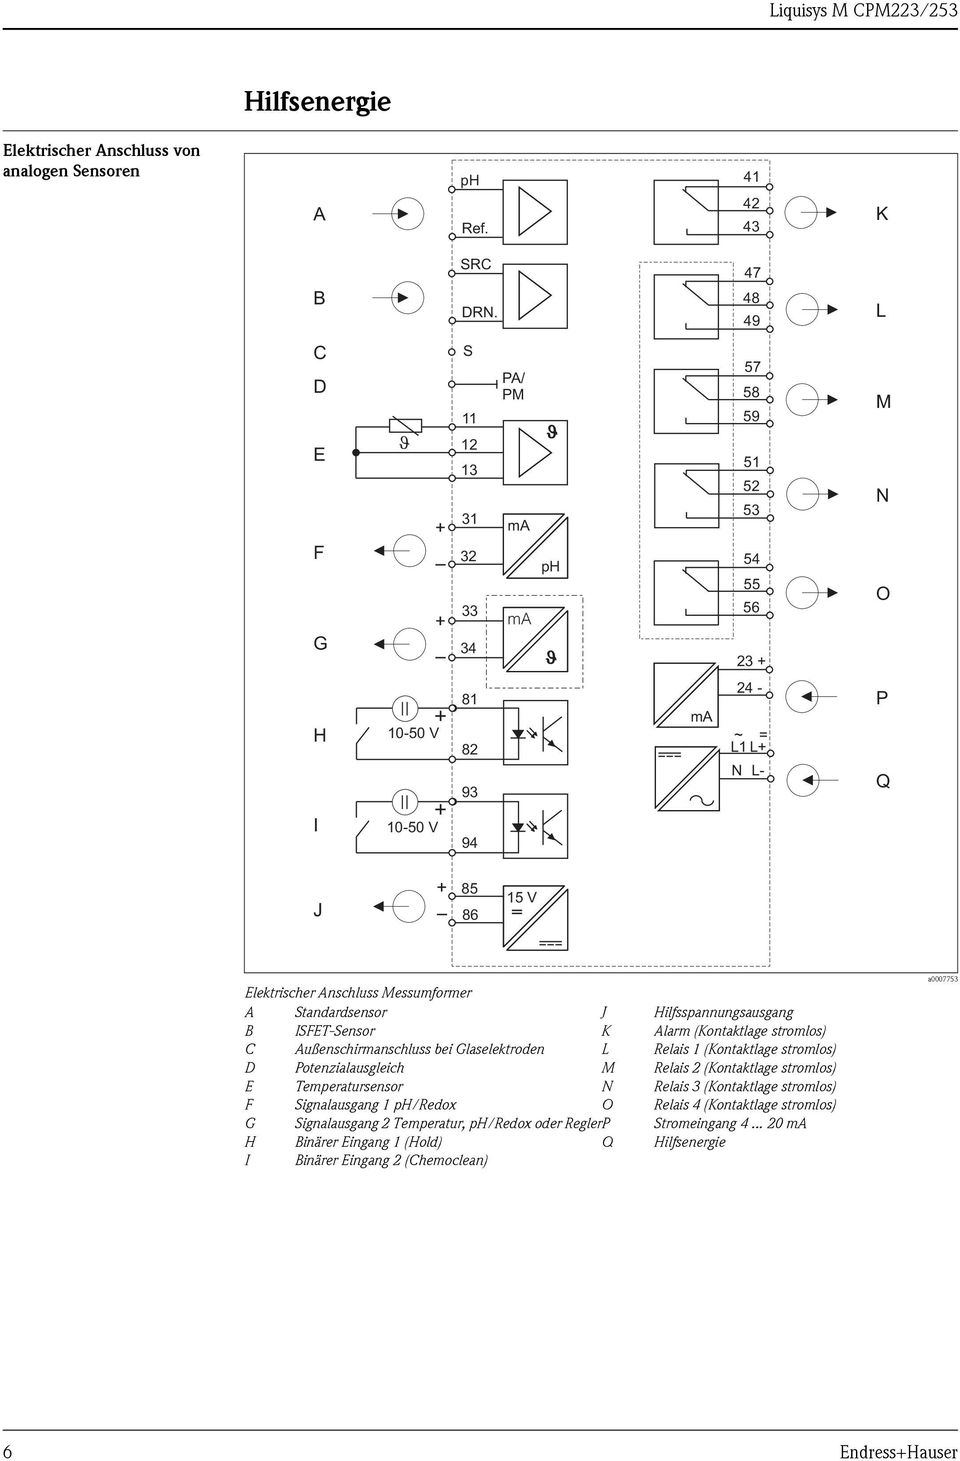 Messumformer A B C D E F Standardsensor ISFET-Sensor Außenschirmanschluss bei Glaselektroden Potenzialausgleich Temperatursensor Signalausgang 1 ph/redox J K L M N O G Signalausgang 2 Temperatur,